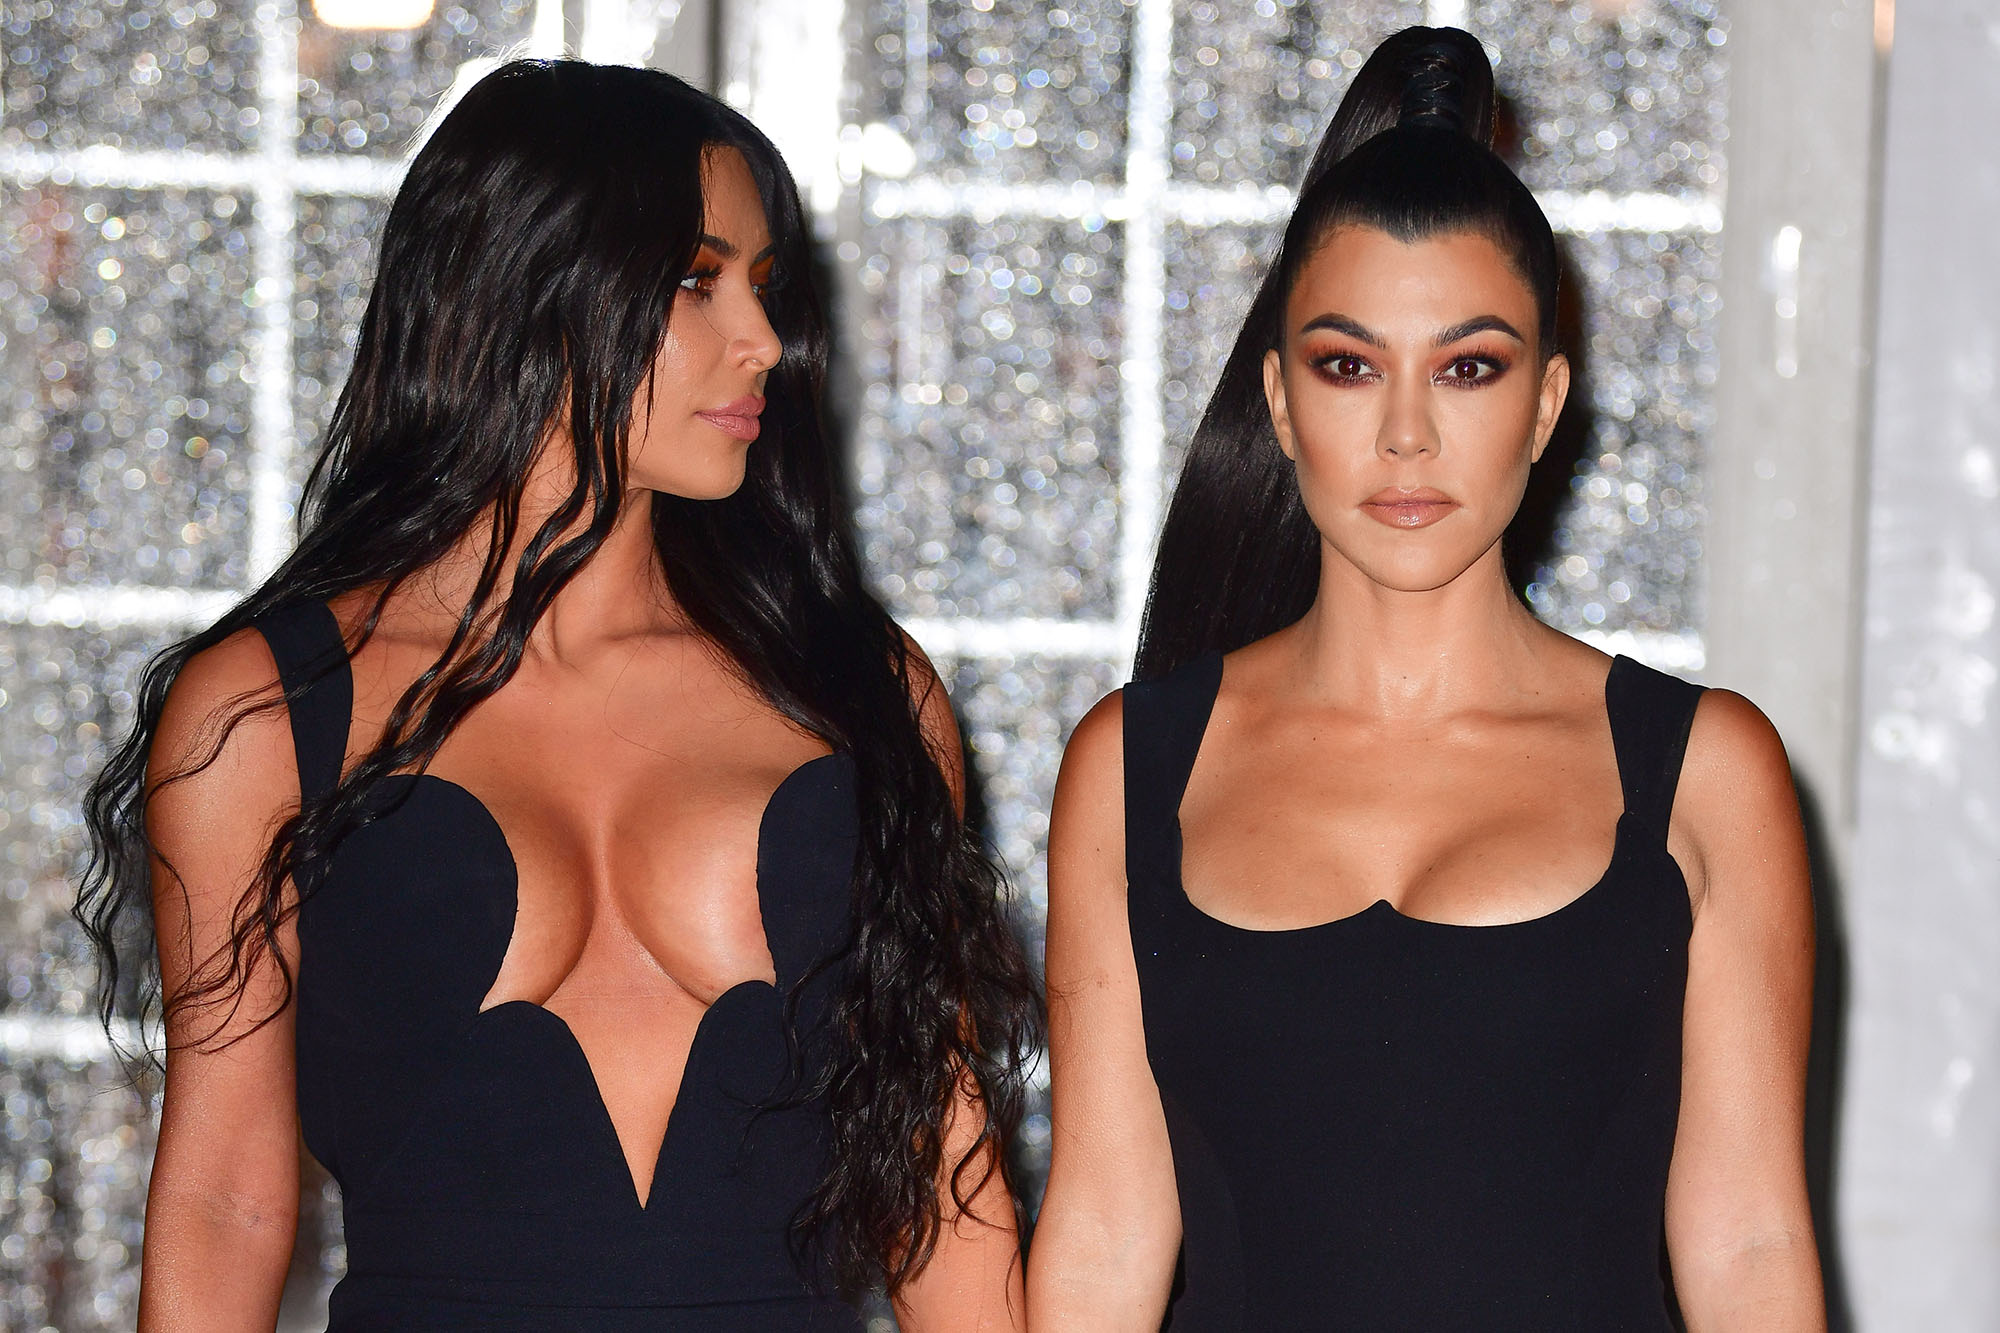 Kourtney Kardashian and Kim Kardashian's Feud Escalates Over Dolce & Gabbana Partnership